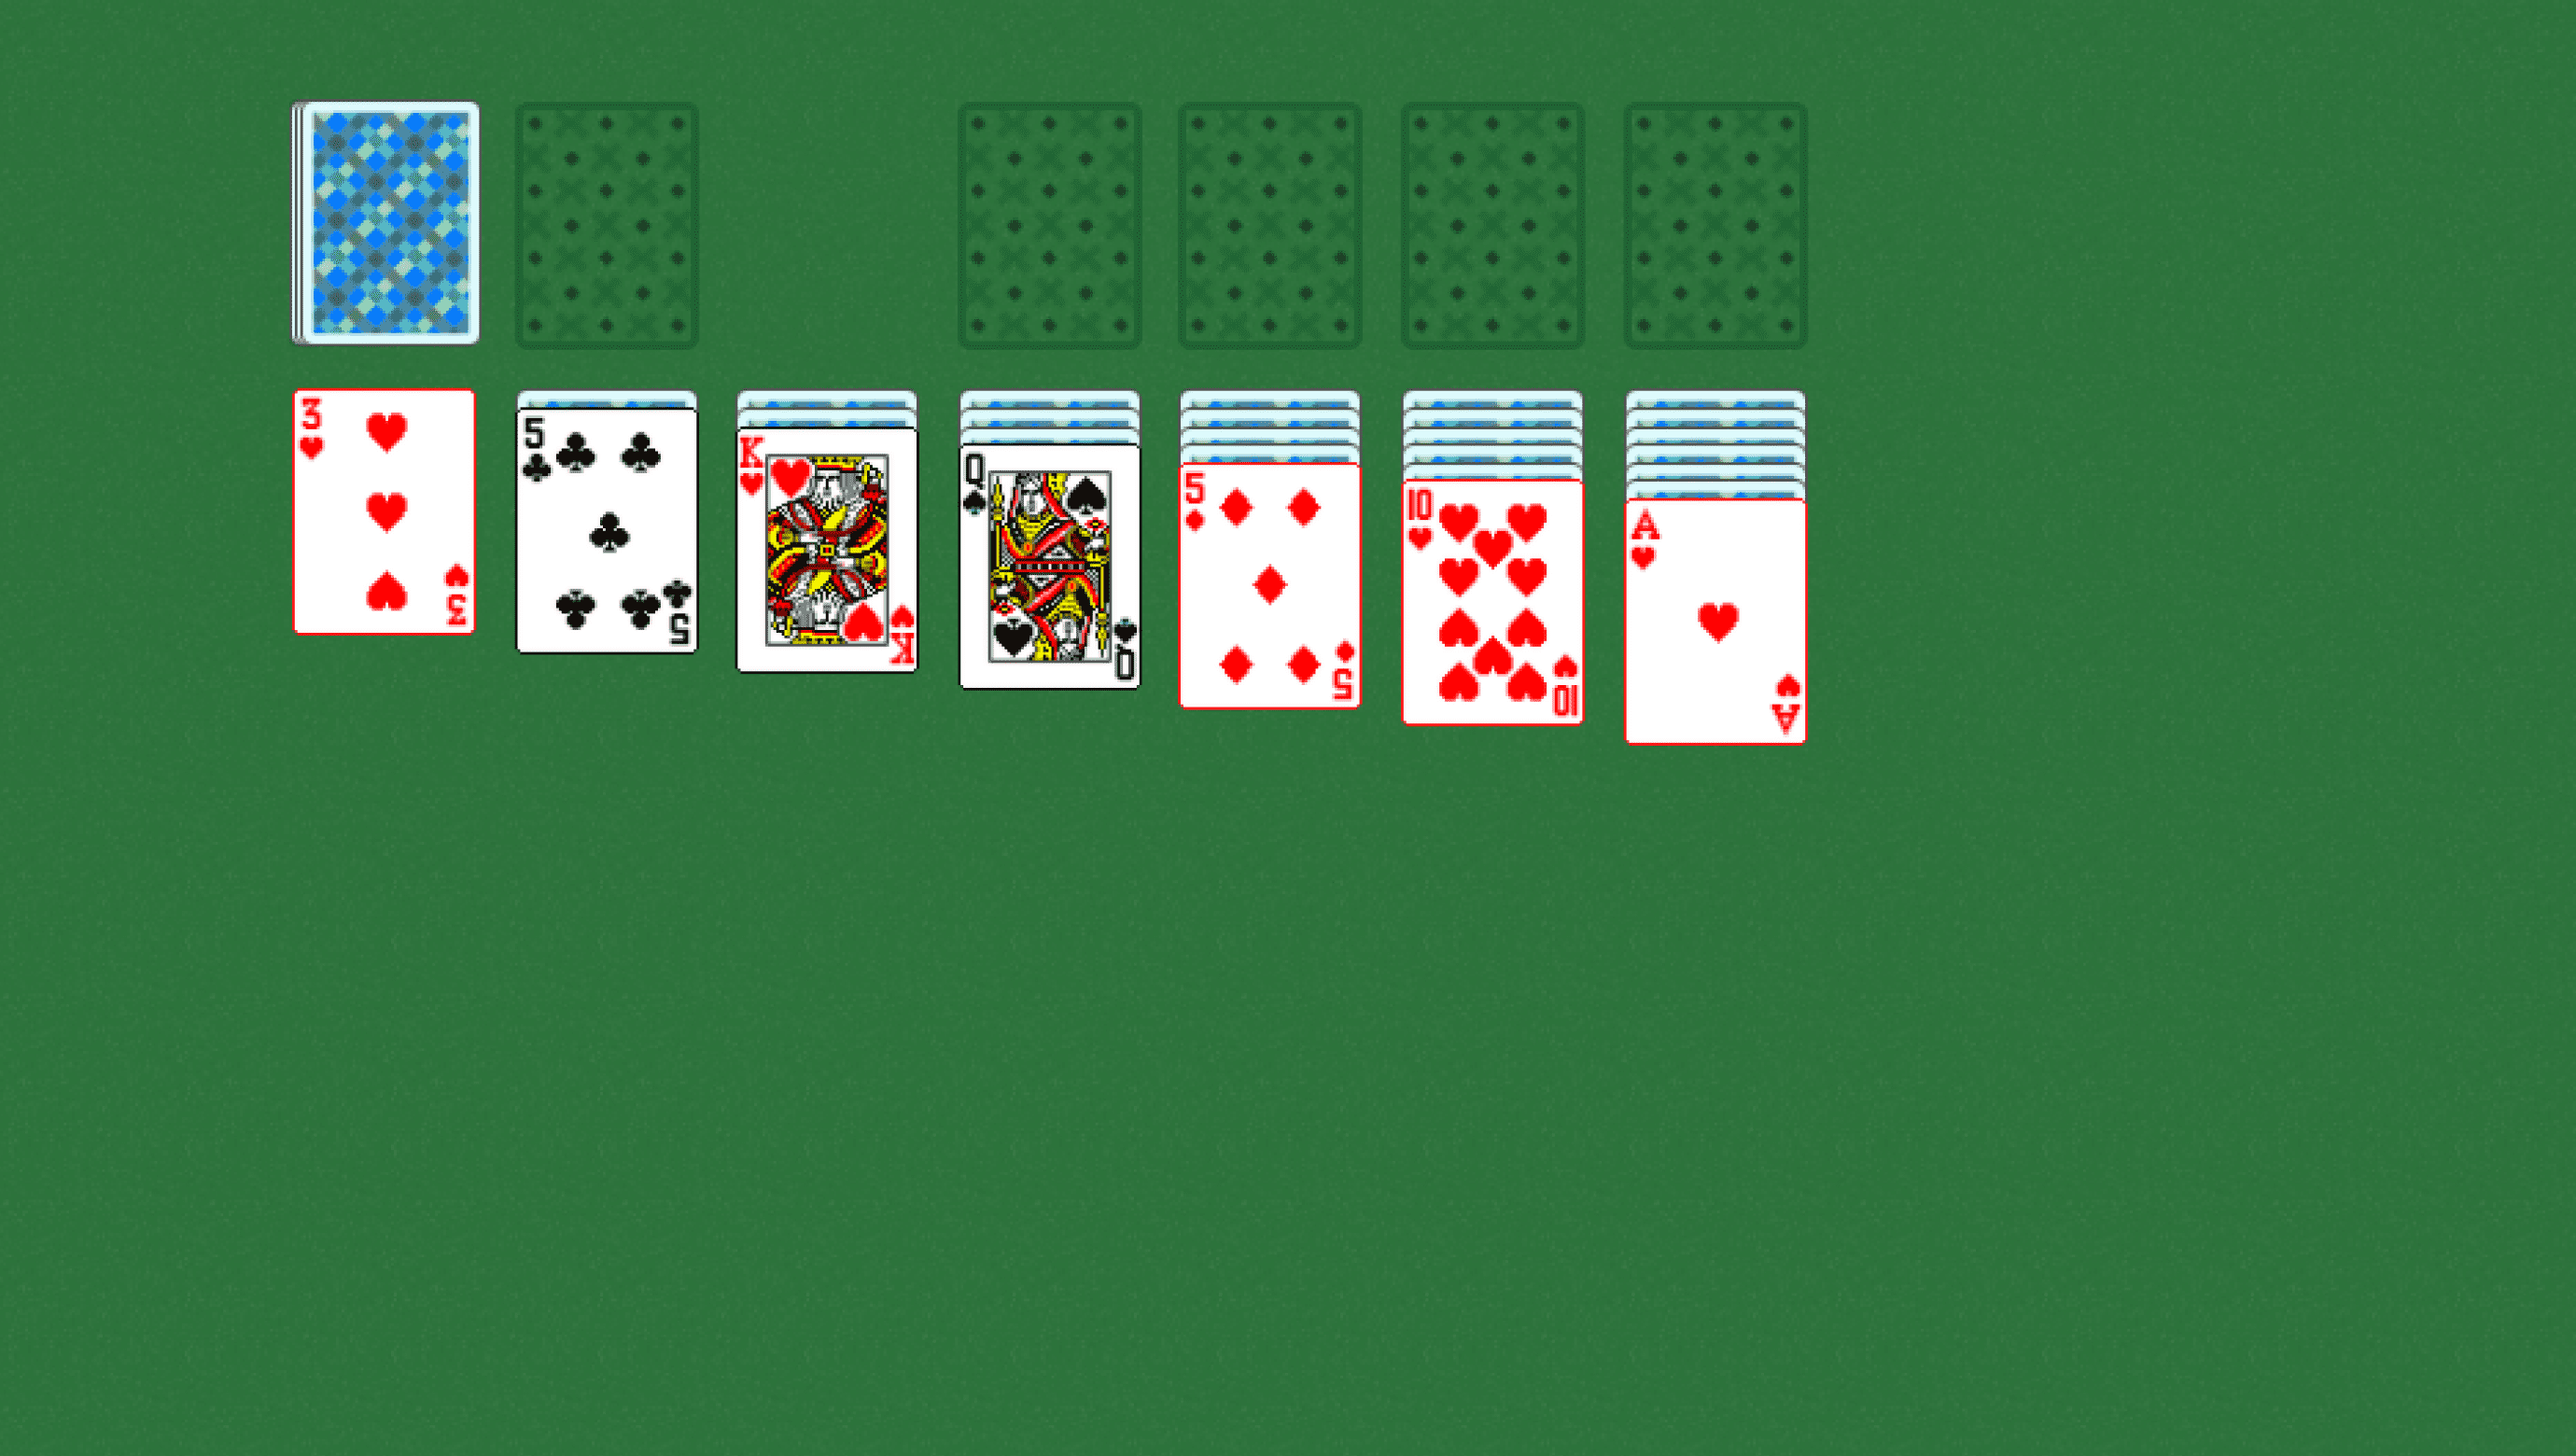 косынка играть бесплатно онлайн 3 карты тройная косынка